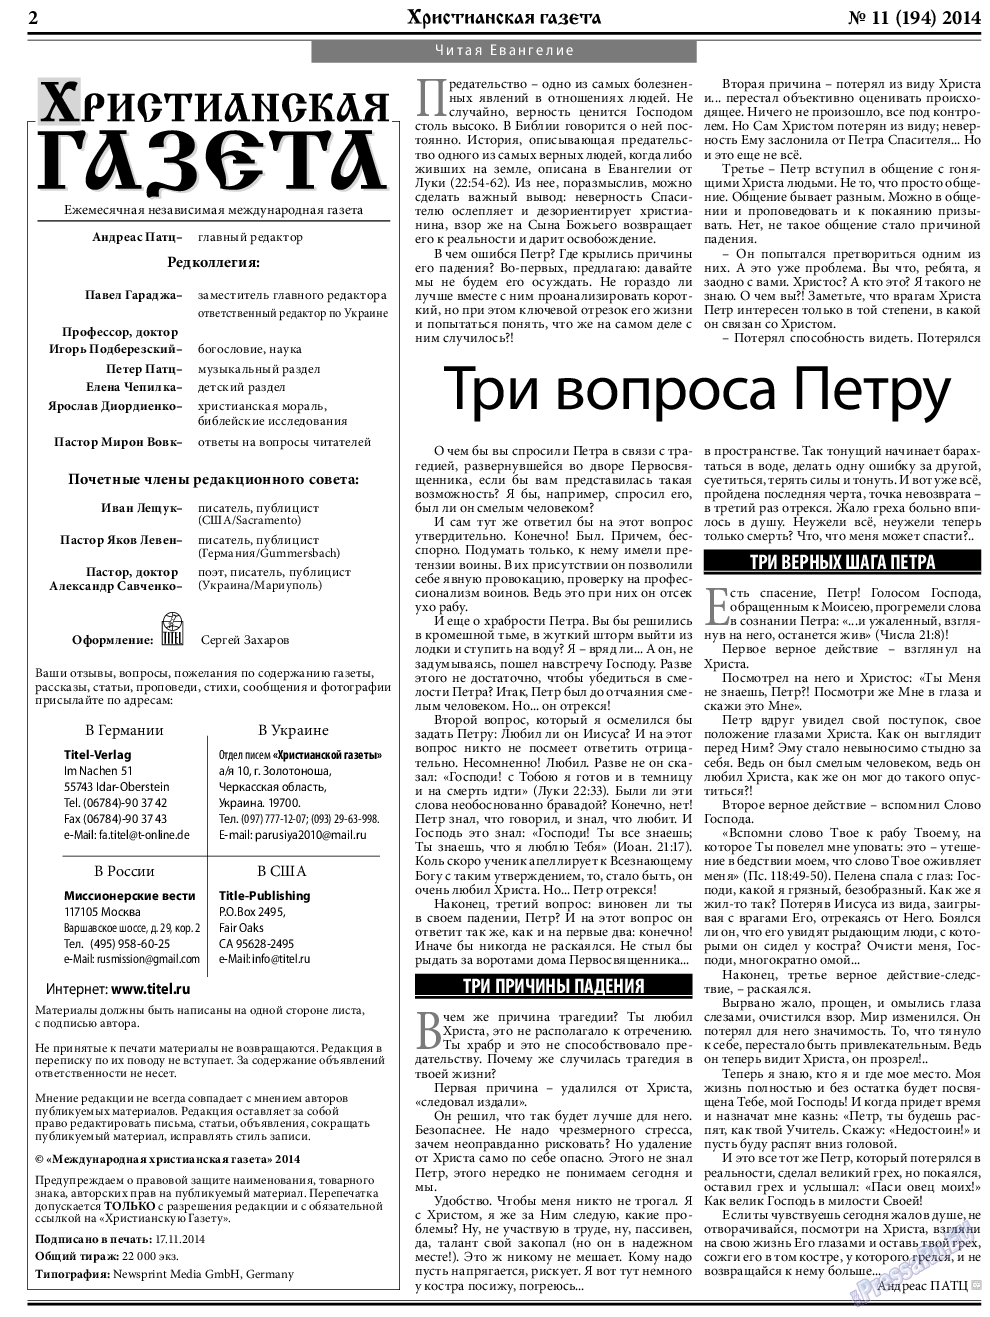 Христианская газета, газета. 2014 №11 стр.2